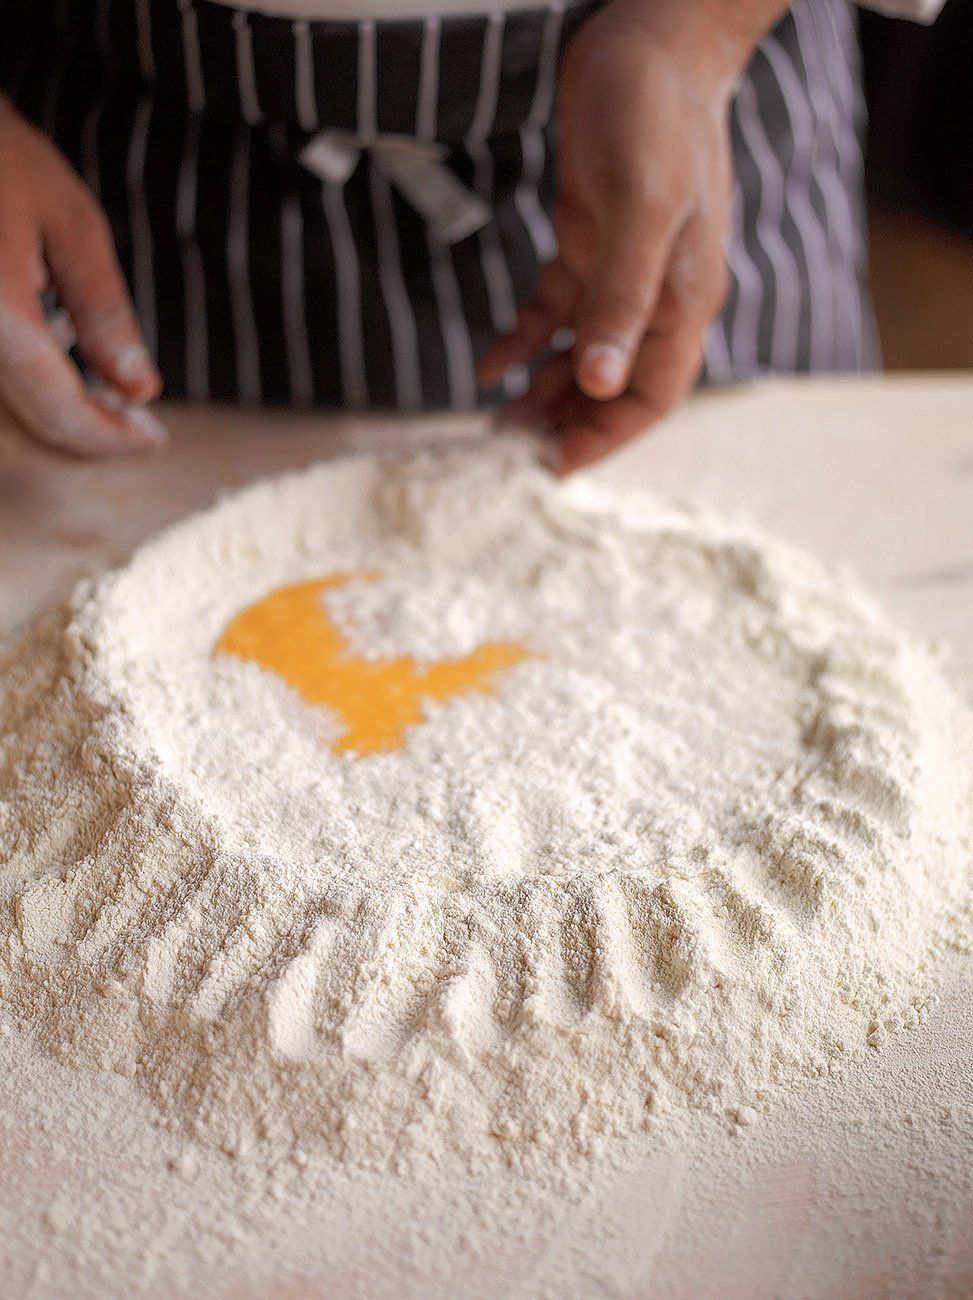 How to Make Homemade Pasta Dough | Fresh Pasta Recipe | Giada De Laurentiis  | Food Network